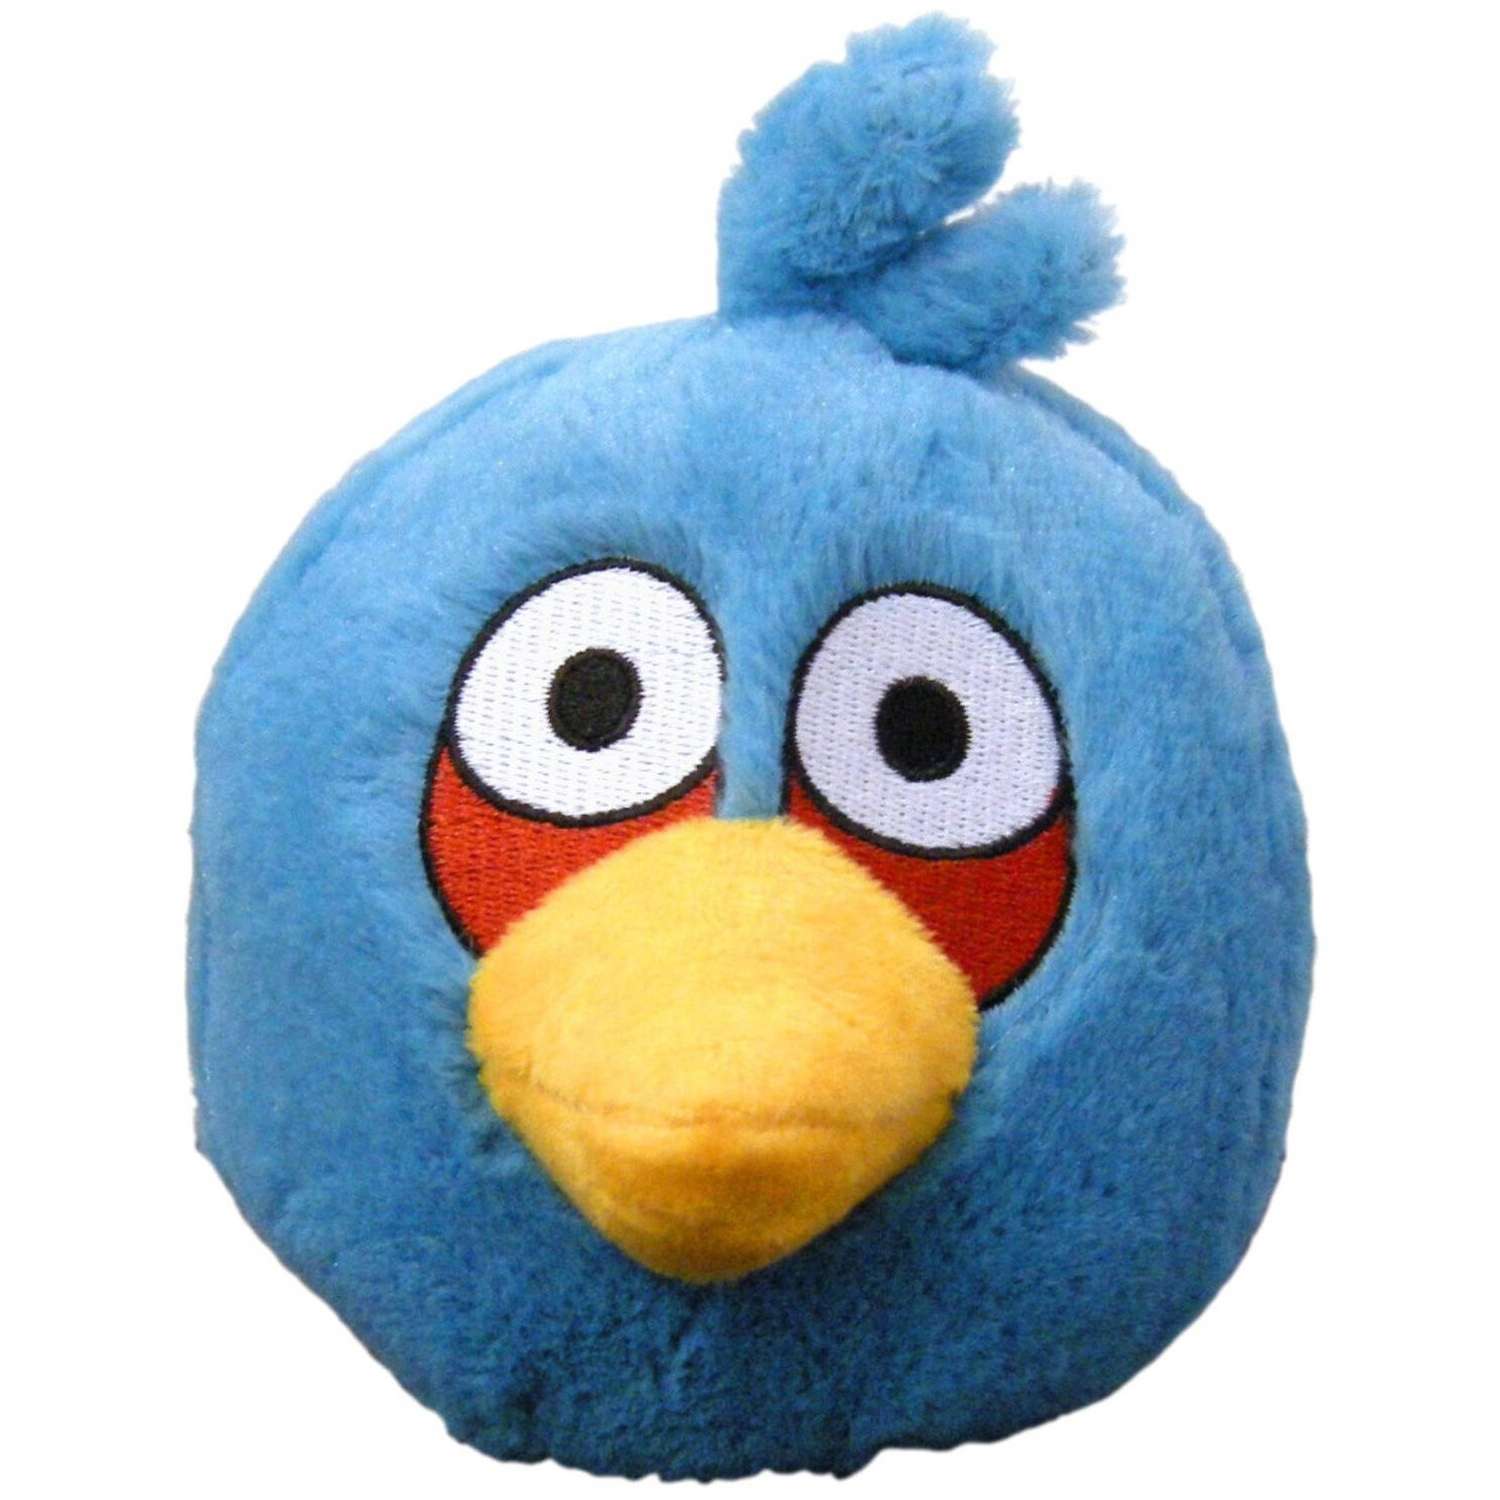 Мягкие игрушки энгри бердз. Angry Birds Plush Toys. Голубые птички Энгри бердз игрушка. Энгри бердз синий. Синяя птица Энгри бёрдс.